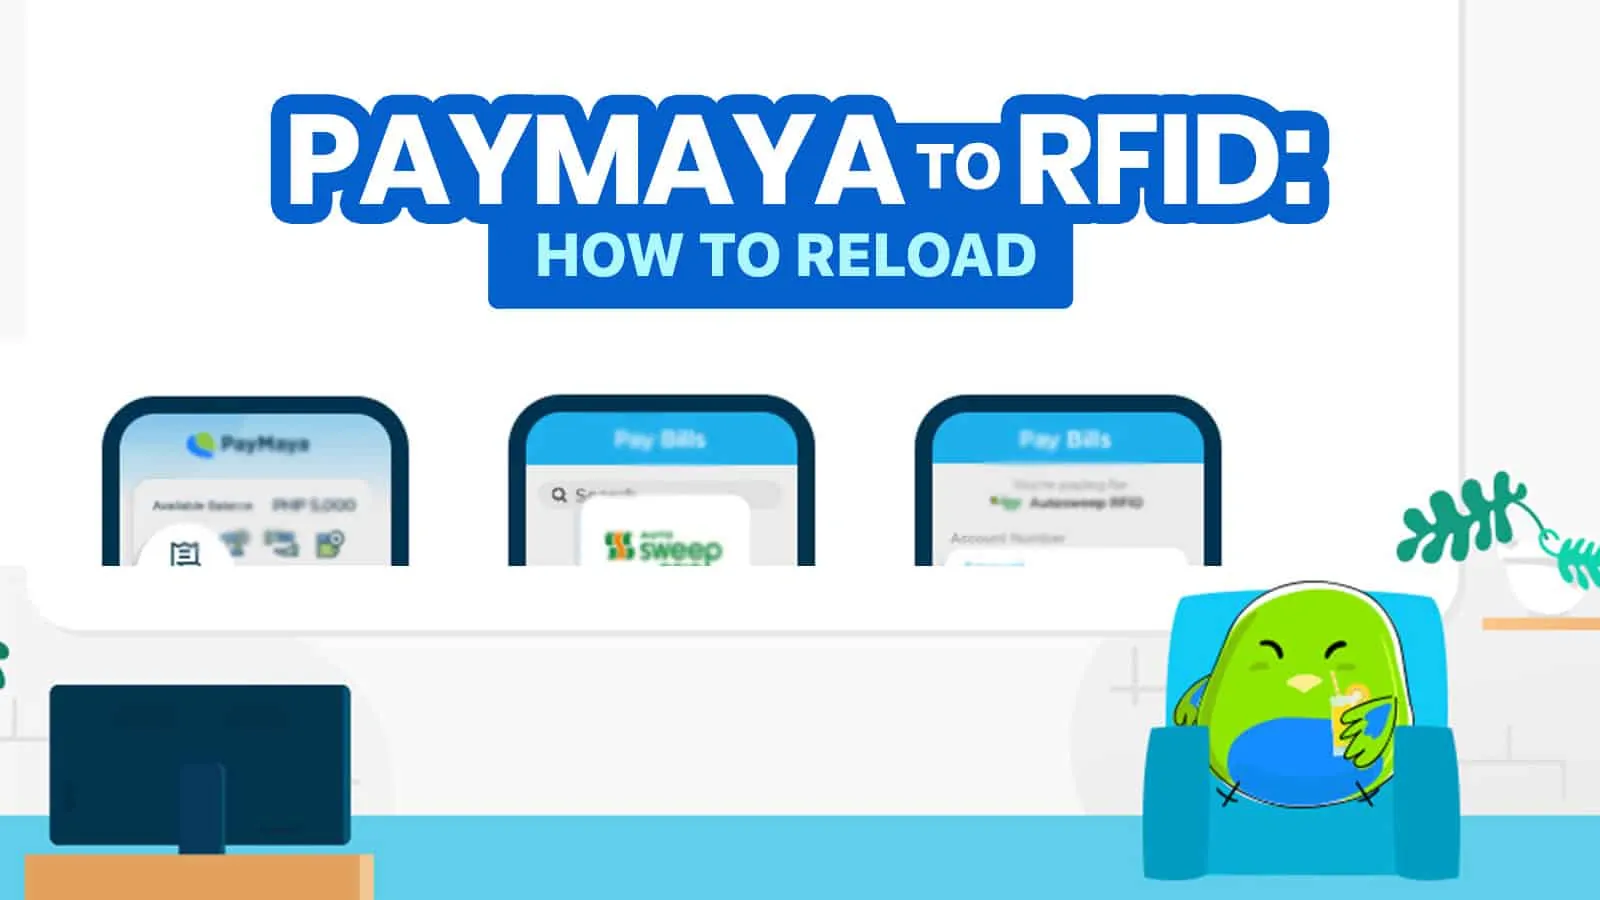 PAYMAYA TO RFID:如何重新加载自动扫描和Easytrip